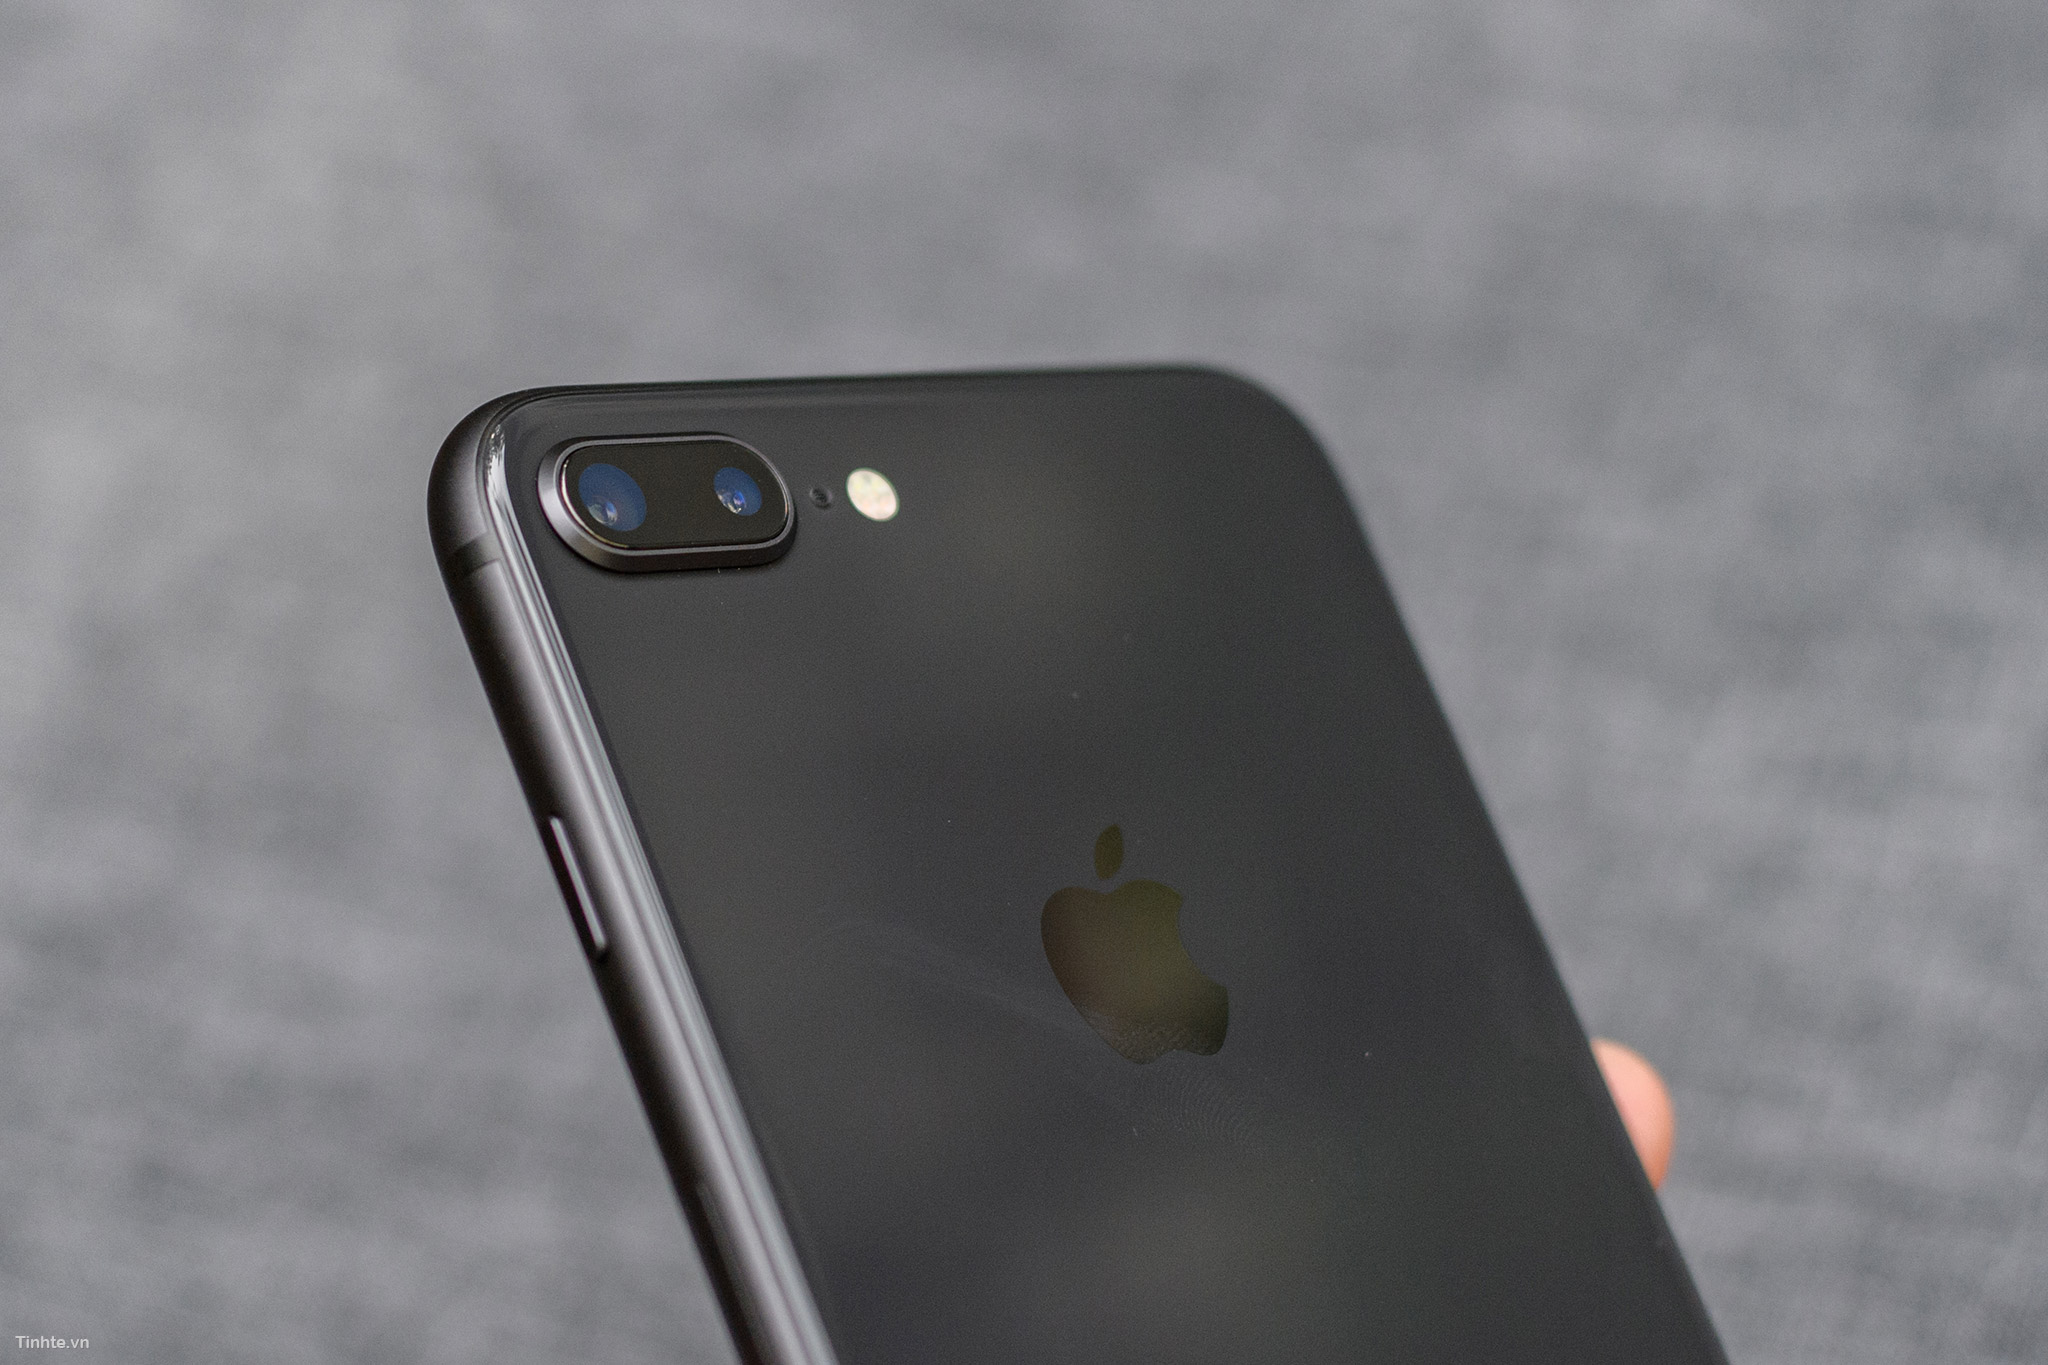 Màu Space Gray của iPhone 8/8 Plus là màu sắc cực kì ấn tượng và sang trọng, đem lại sự khác biệt cho người sử dụng. Hình ảnh sản phẩm sẽ giúp bạn nhìn rõ hơn về màu sắc và cảm nhận được sự độc đáo của chiếc điện thoại này.